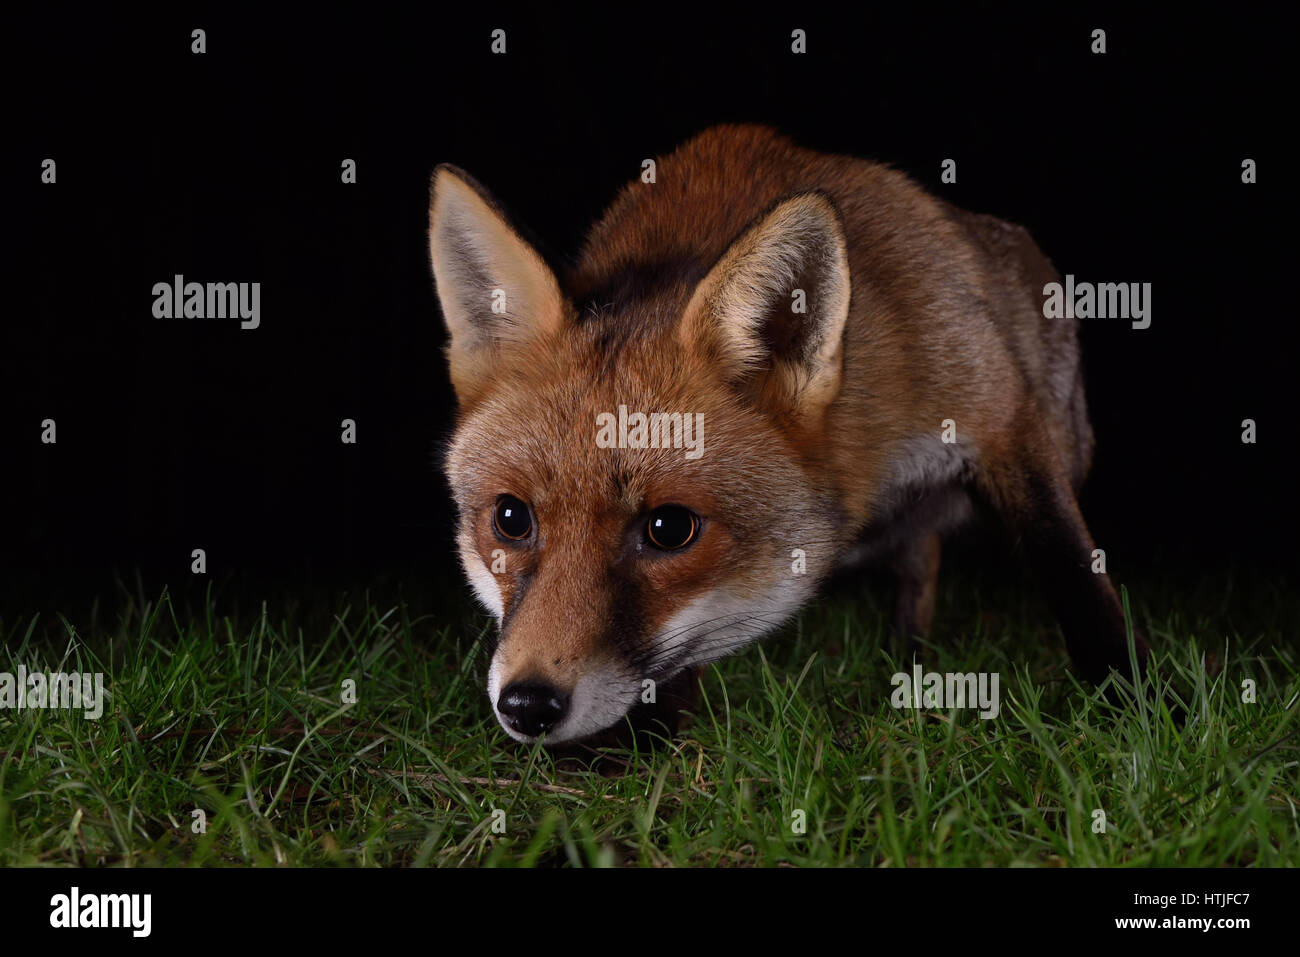 Fox prowling pour l'alimentation dans un jardin de Londres la nuit Banque D'Images